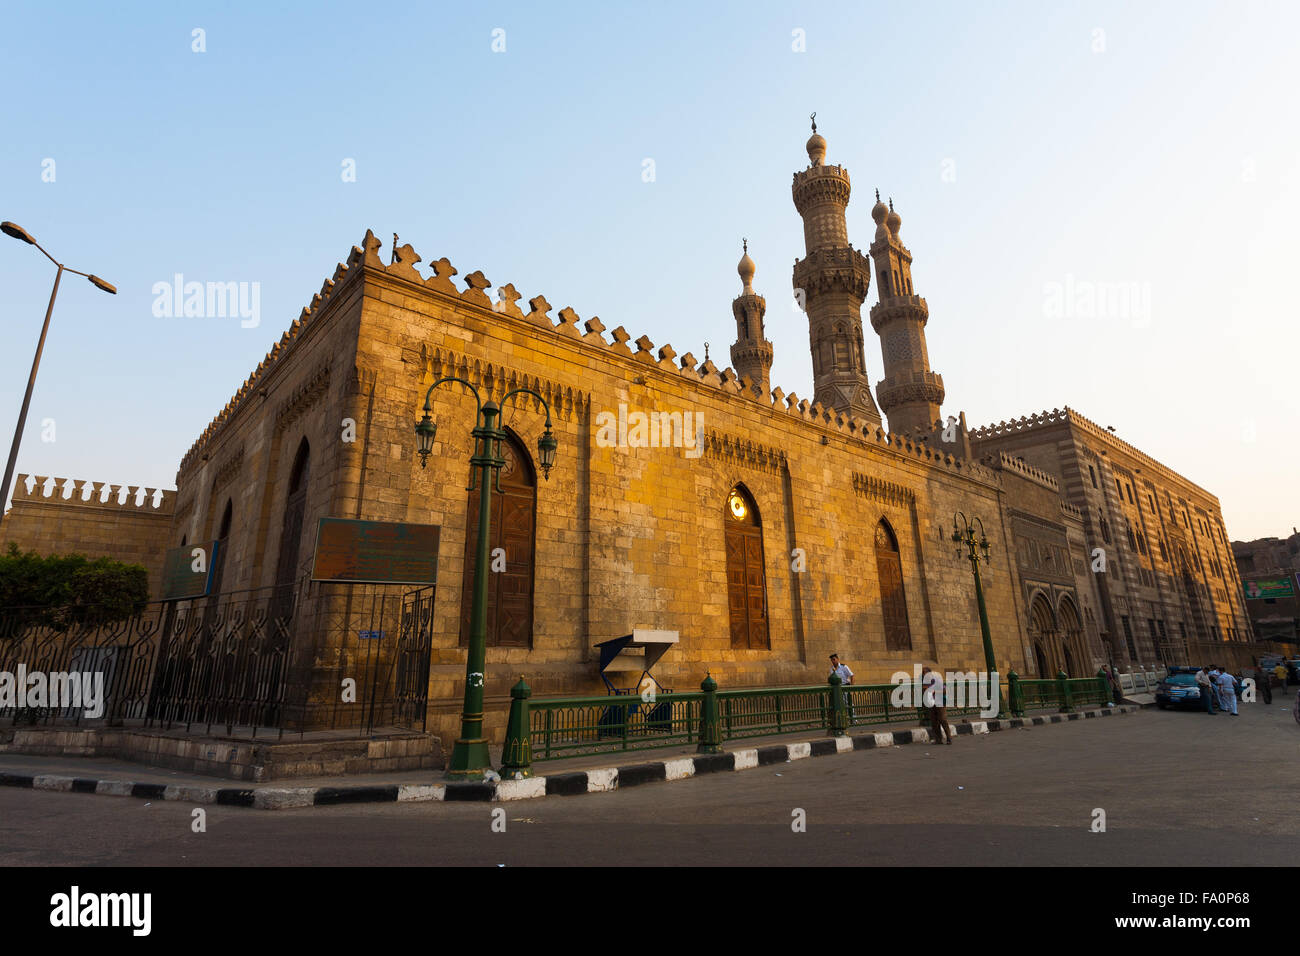 Menschen und Polizei zu Fuß rund um die Gebäude der Al Azhar Mosque und Madrasa, eine wichtige Universitätsstadt für Sunni islamische Studien Stockfoto